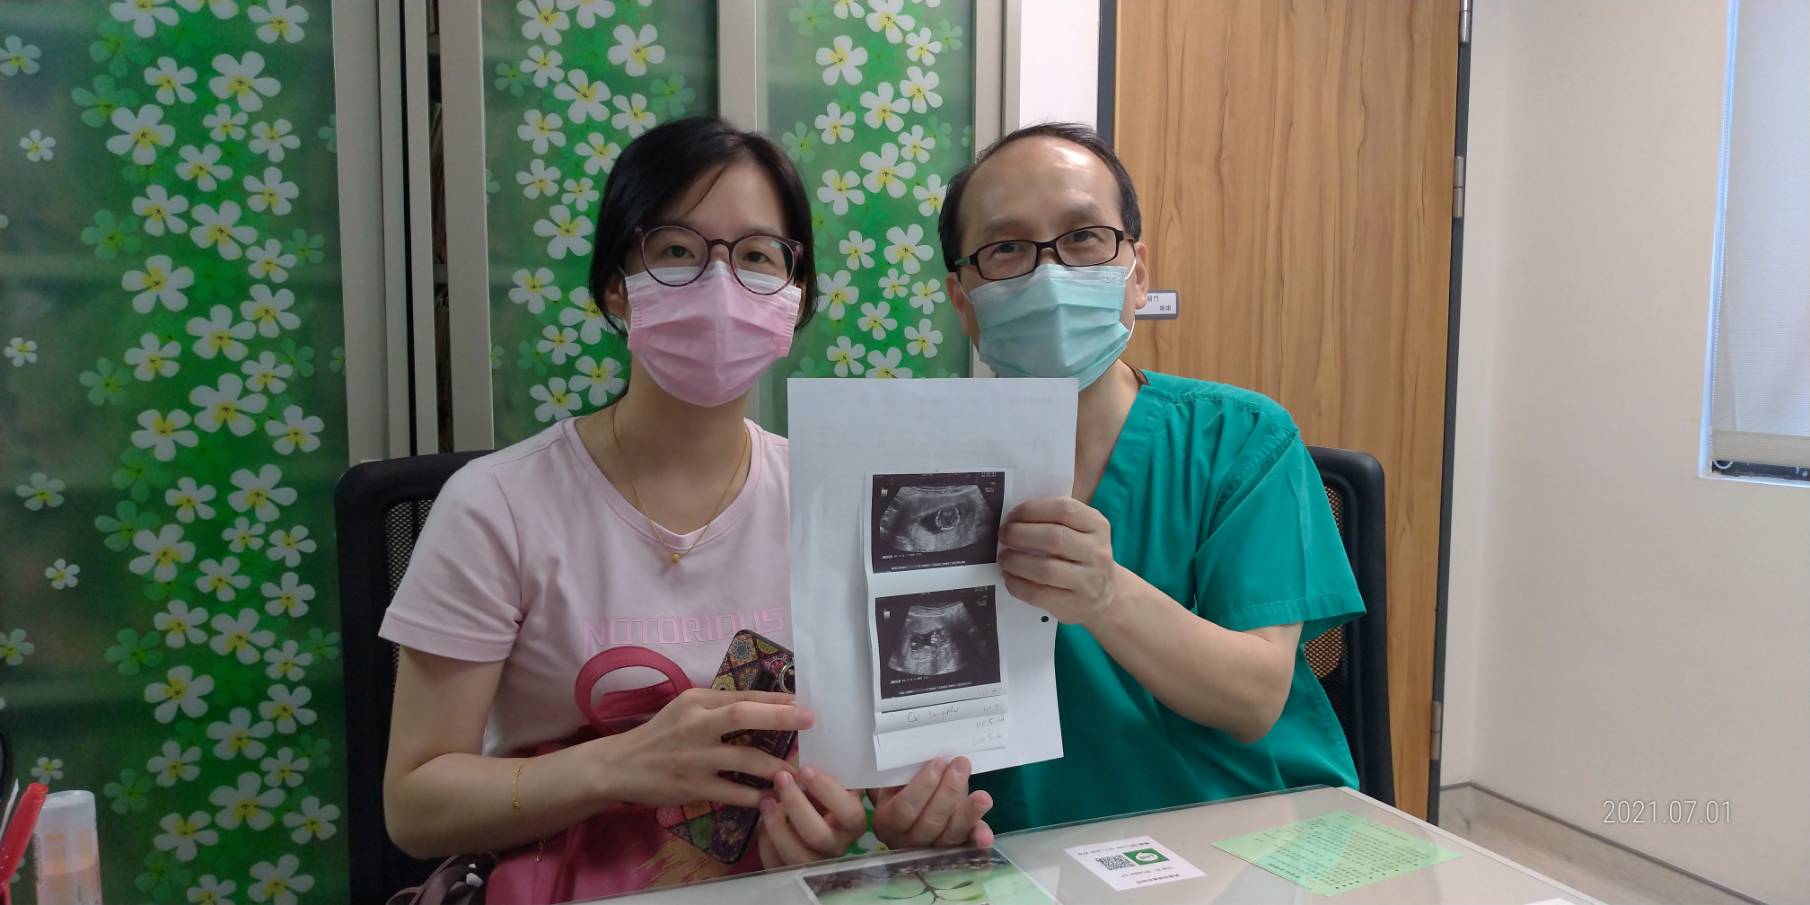 我們去了診所做檢查結果一切正常，後來透過試管迎來大寶，這次沒想到吃排卵藥第二個月就成功懷上二寶!